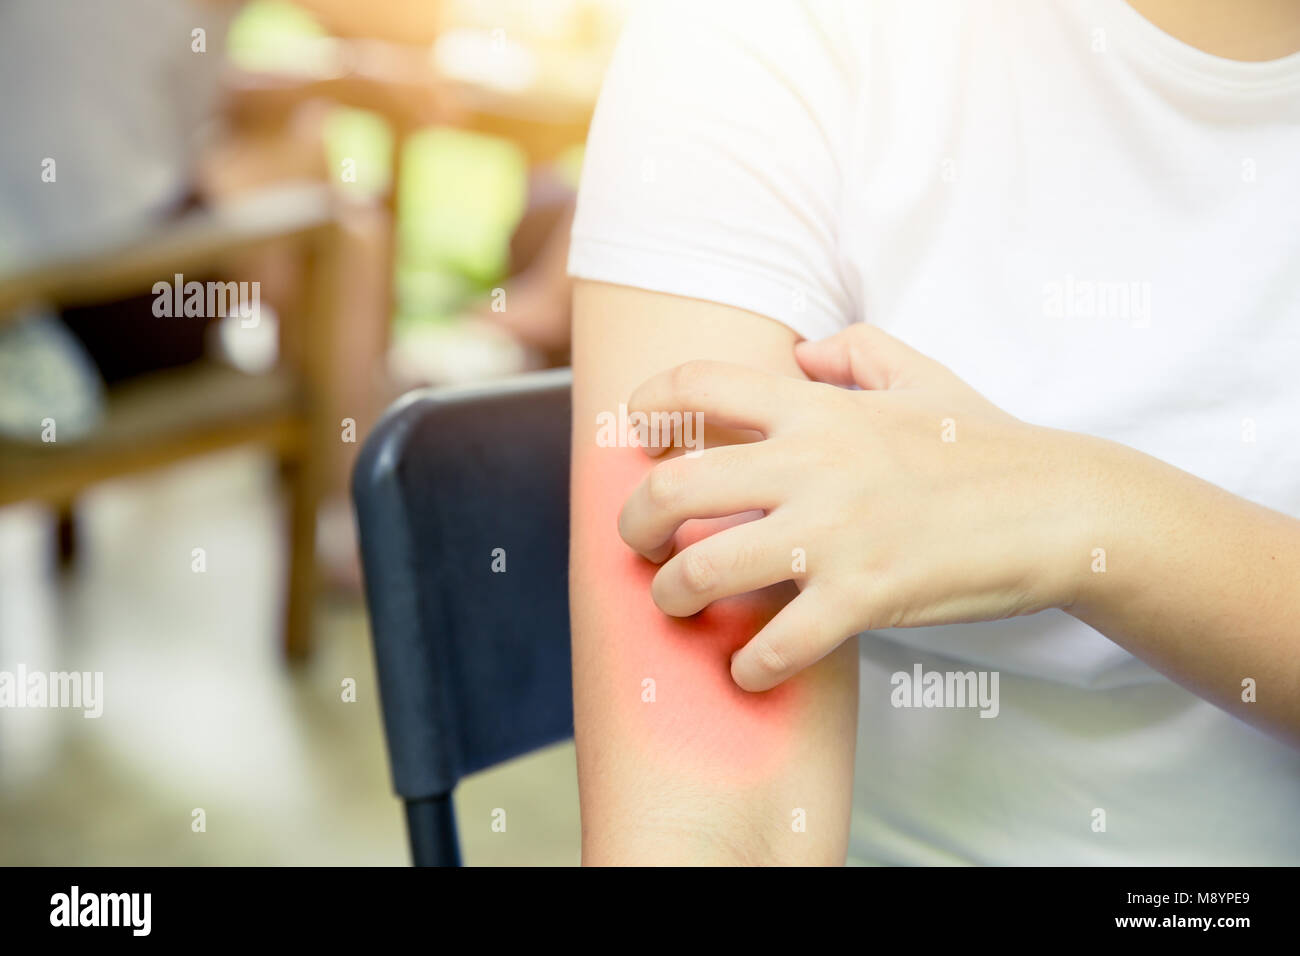 La dermatite allergia della pelle: donne mano prurito scrashing rosso pelle del braccio Foto Stock